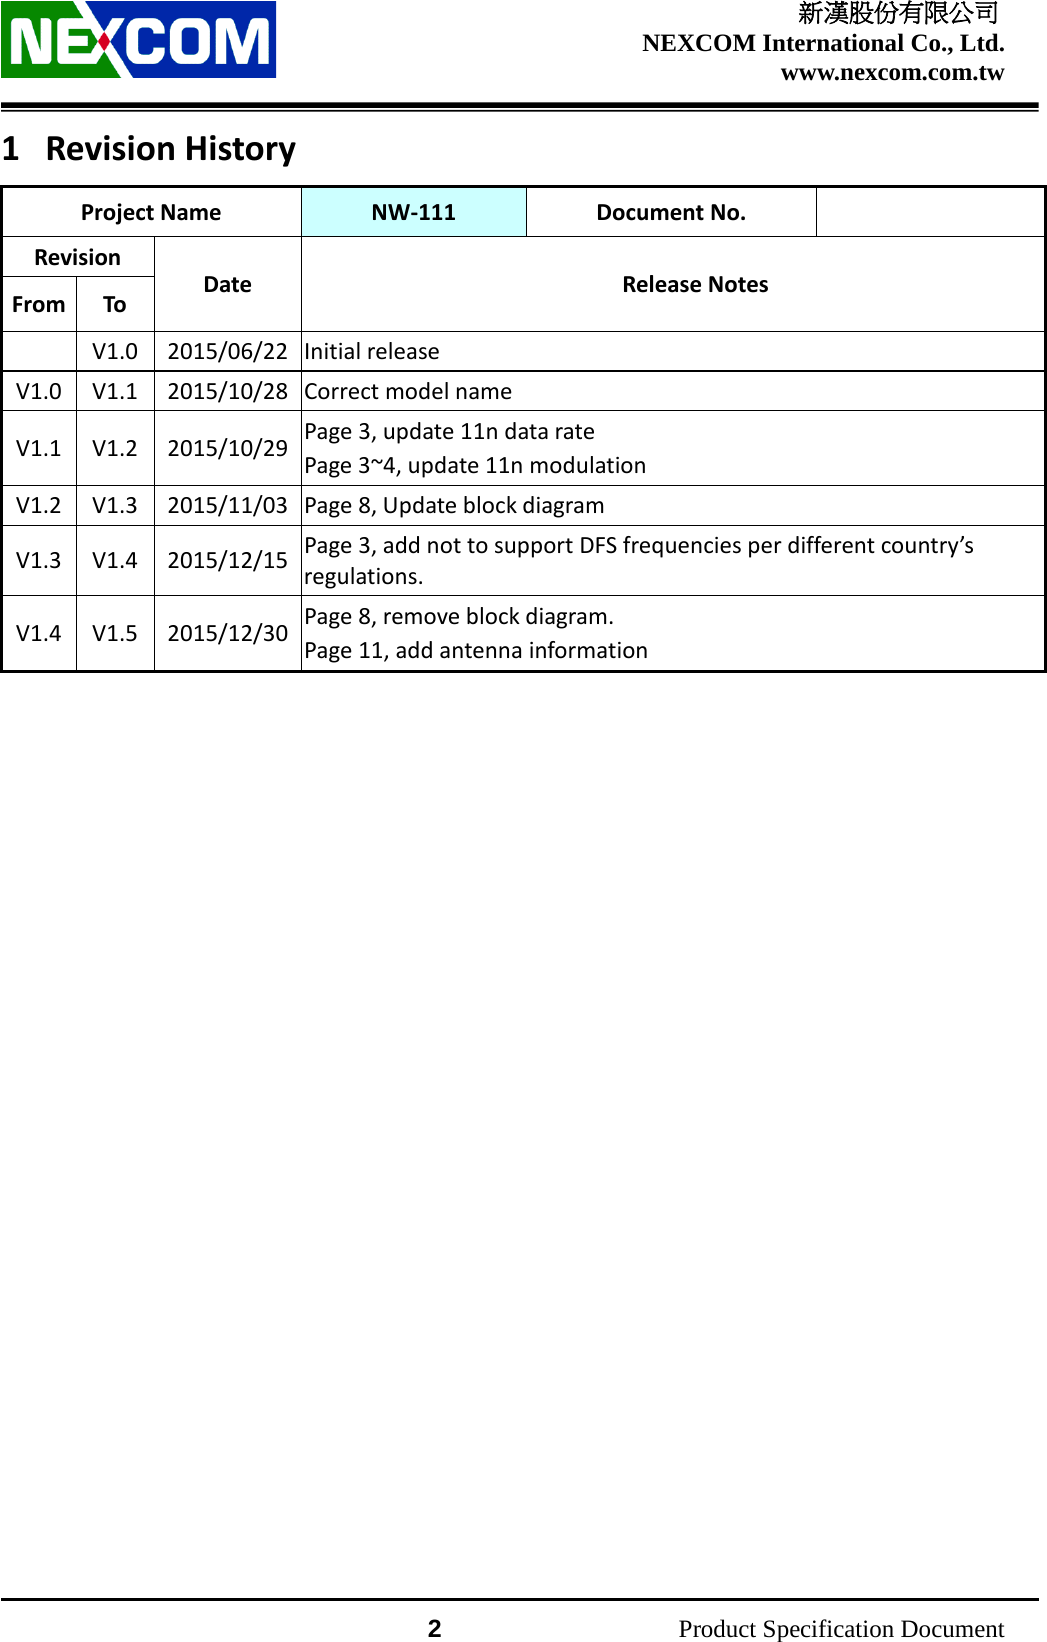    新漢股份有限公司 NEXCOM International Co., Ltd. www.nexcom.com.tw                 2          Product Specification Document 1 Revision History Project Name NW-111 Document No.  Revision Date Release Notes From To   V1.0  2015/06/22  Initial release   V1.0 V1.1 2015/10/28 Correct model name V1.1 V1.2 2015/10/29 Page 3, update 11n data rate Page 3~4, update 11n modulation V1.2 V1.3 2015/11/03 Page 8, Update block diagram V1.3 V1.4 2015/12/15  Page 3, add not to support DFS frequencies per different country’s regulations. V1.4 V1.5 2015/12/30 Page 8, remove block diagram. Page 11, add antenna information  